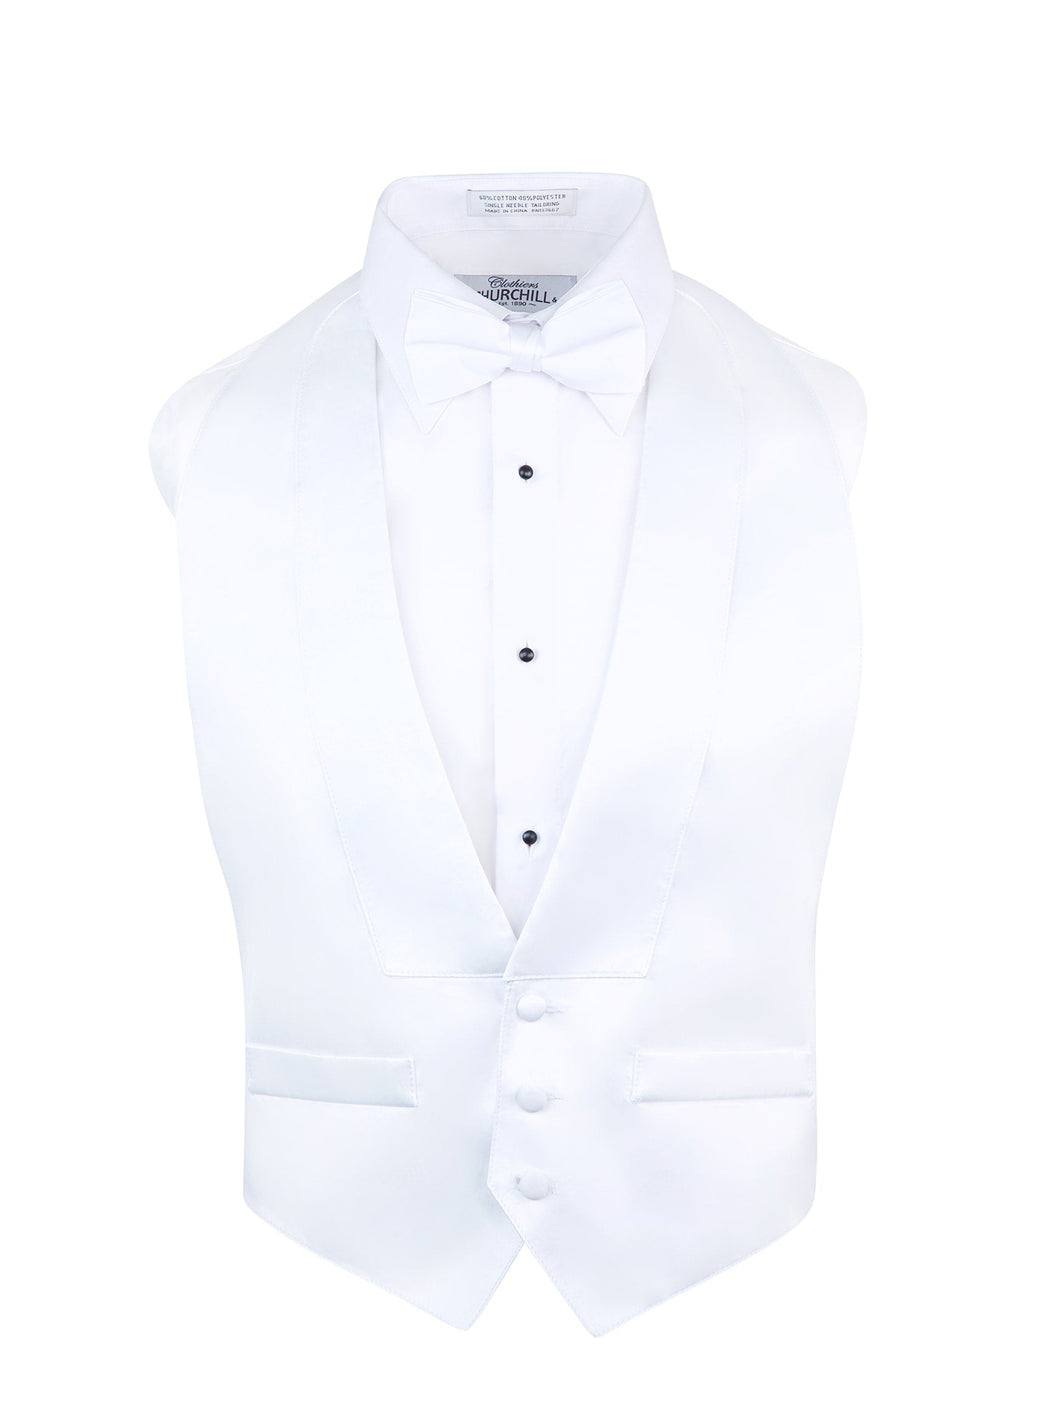 S.H. Churchill & Co. Men's Satin White Backless Vest & Bow Tie Set